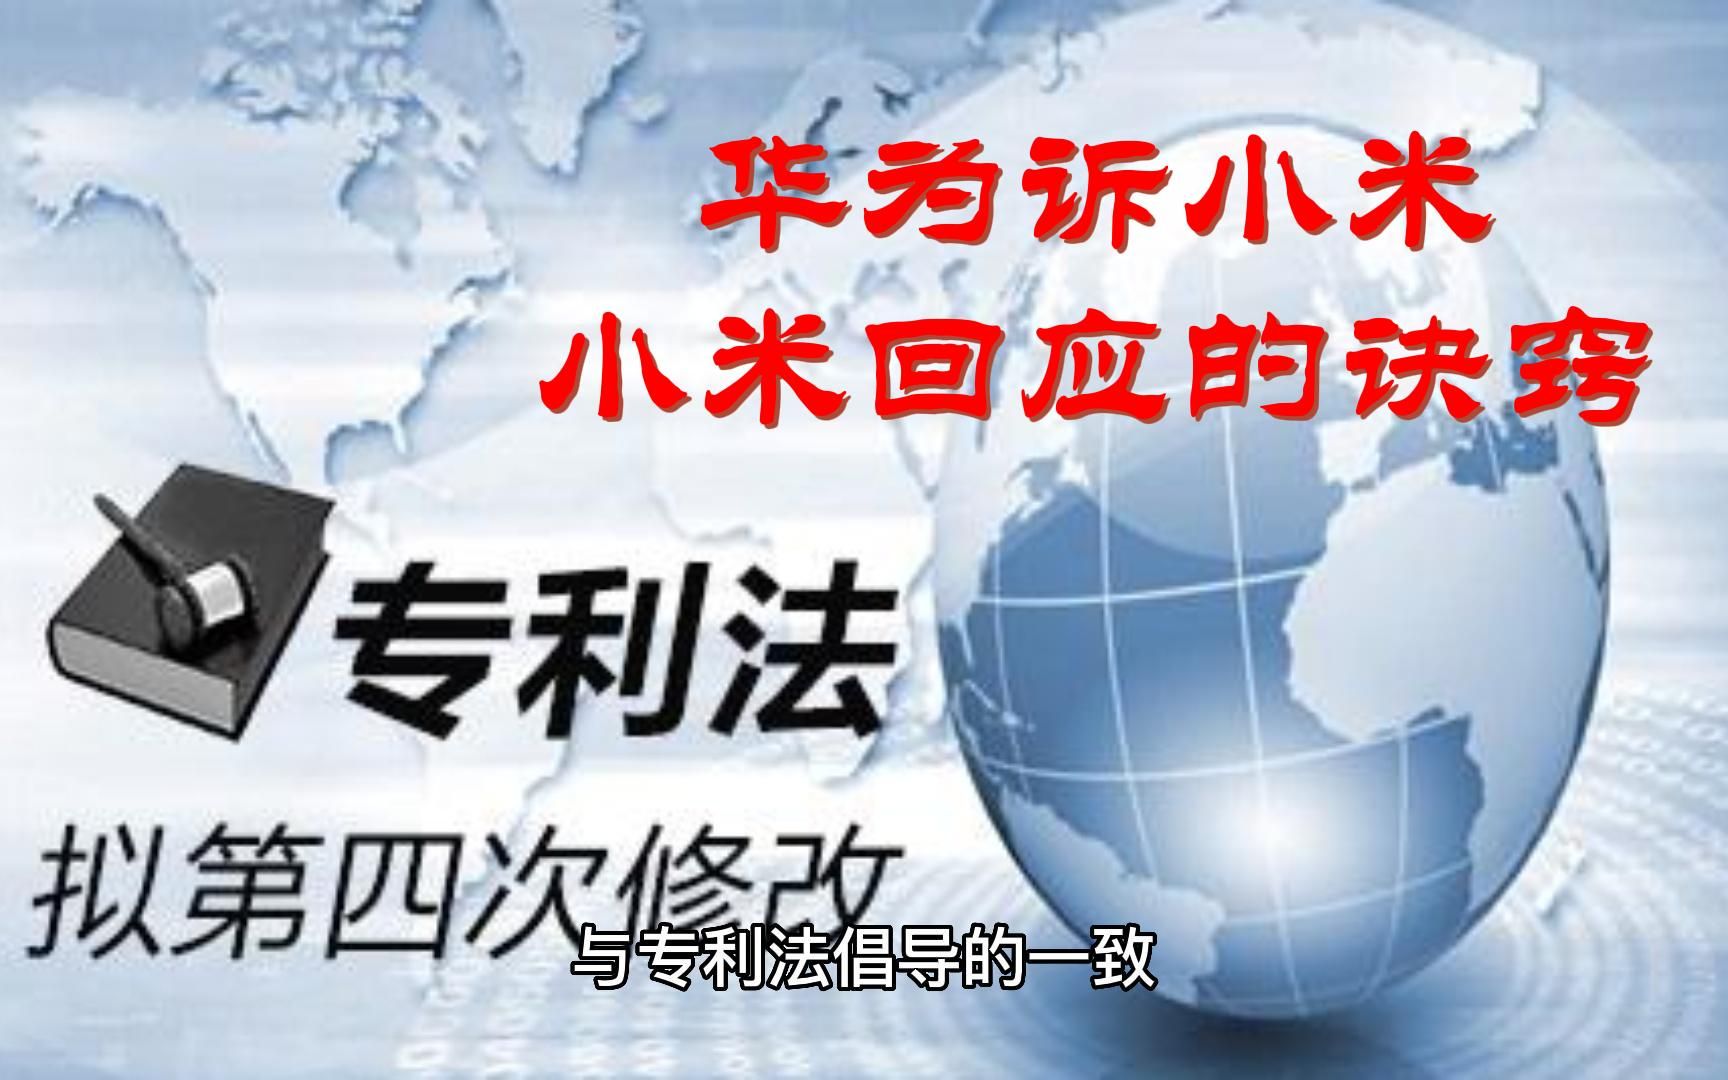 亚洲领衔全球专利申请 华为全球专利申请量第一—会员服务 中国电子商会